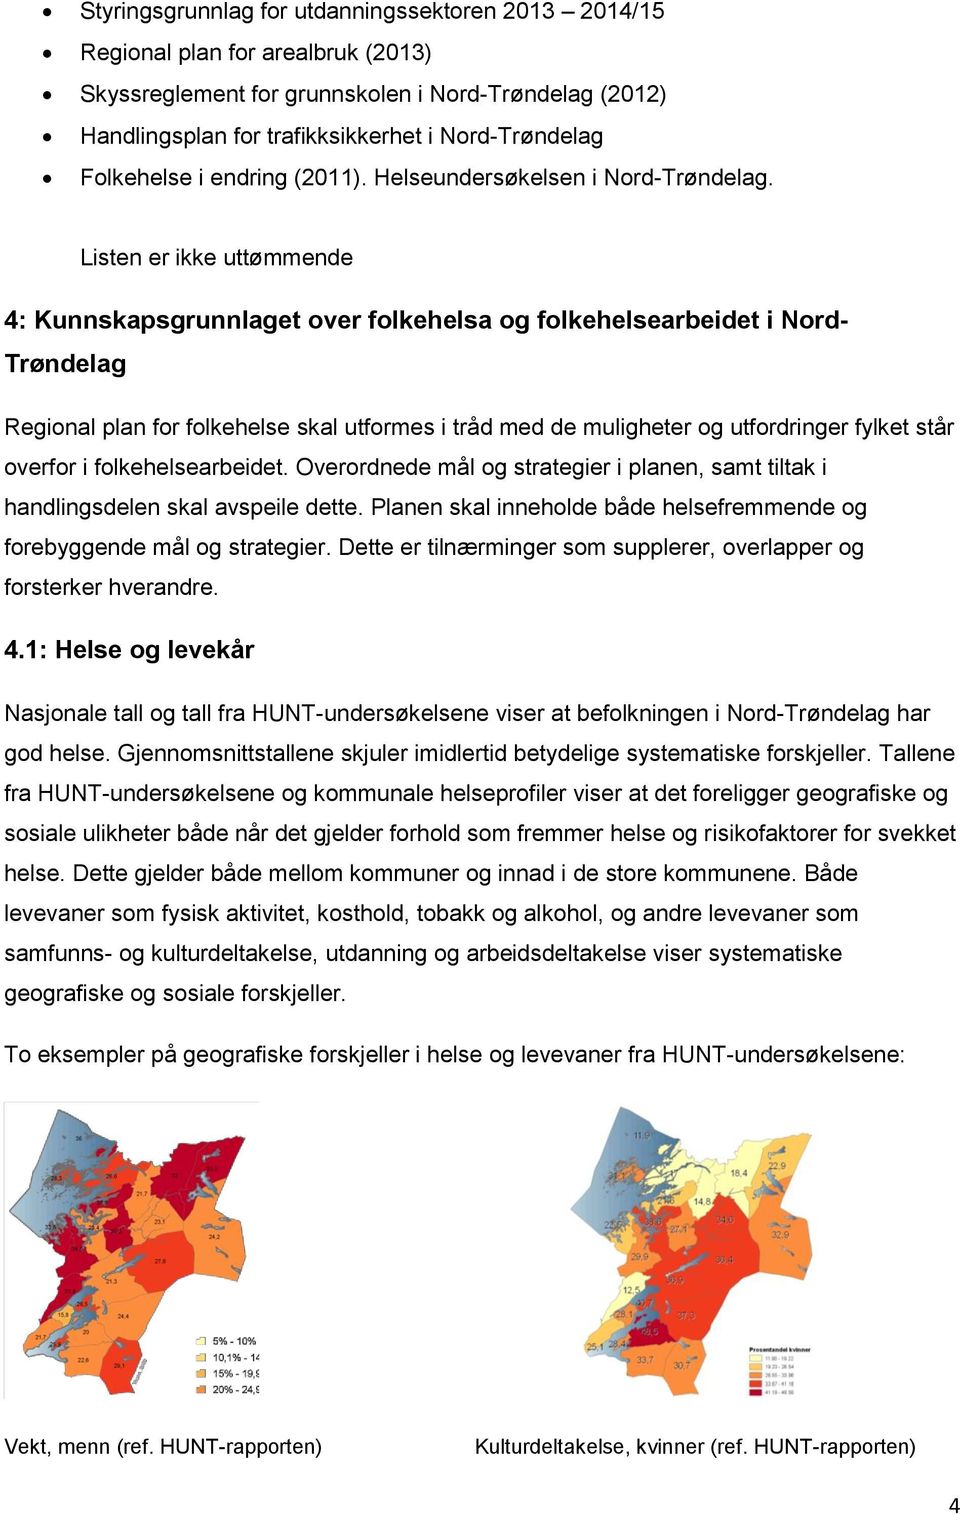 Listen er ikke uttømmende 4: Kunnskapsgrunnlaget over folkehelsa og folkehelsearbeidet i Nord- Trøndelag Regional plan for folkehelse skal utformes i tråd med de muligheter og utfordringer fylket